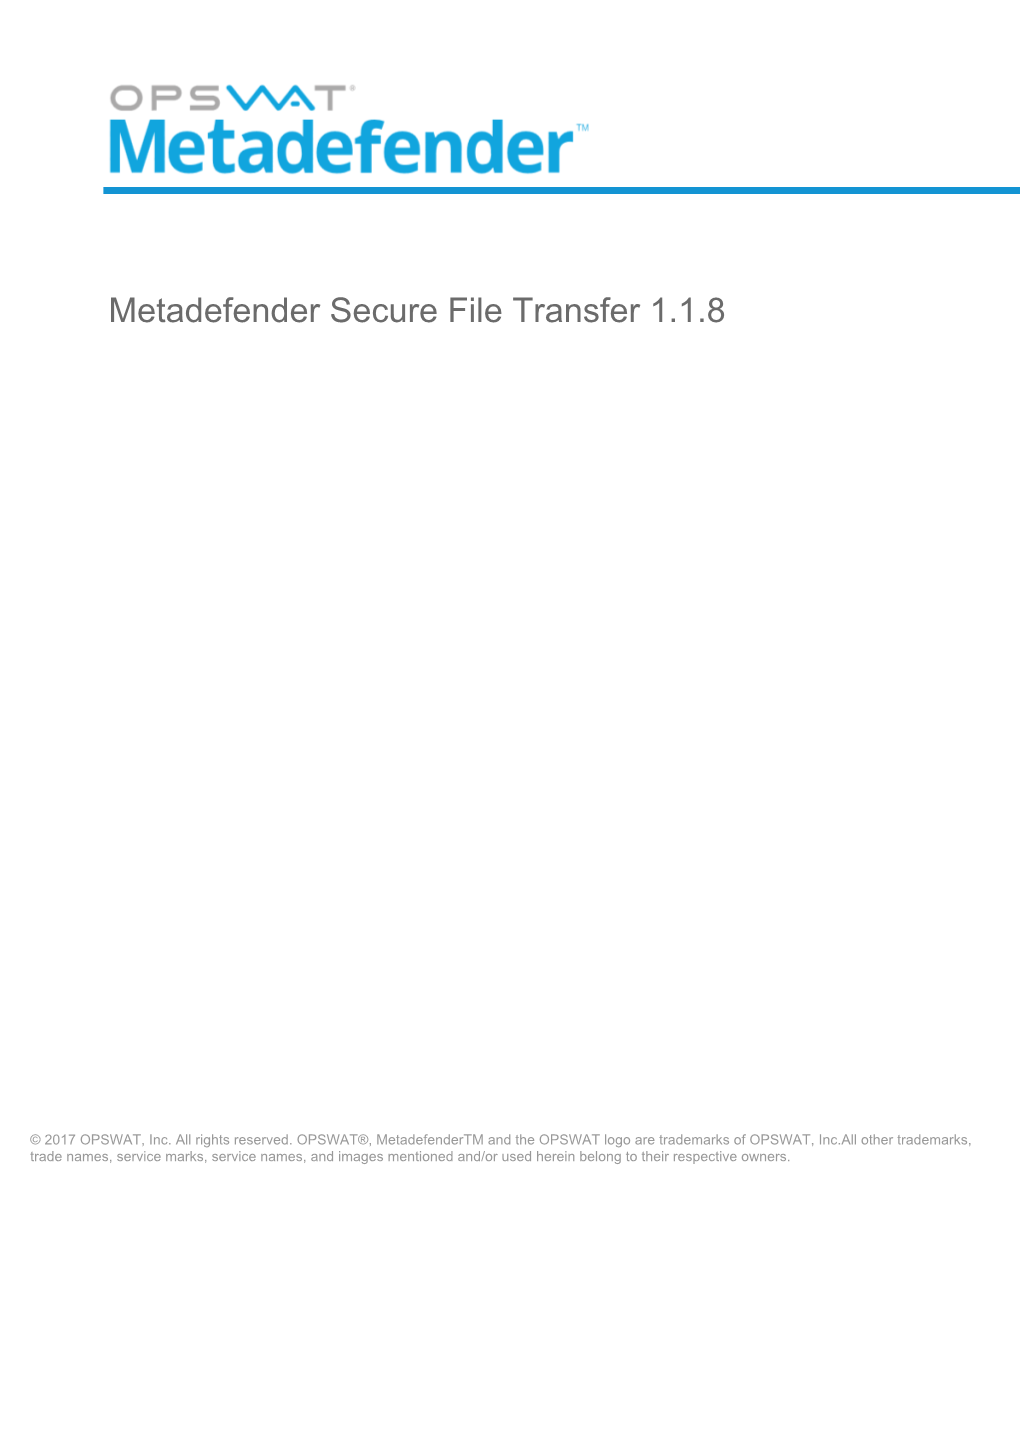 Metadefender Secure File Transfer 1.1.8